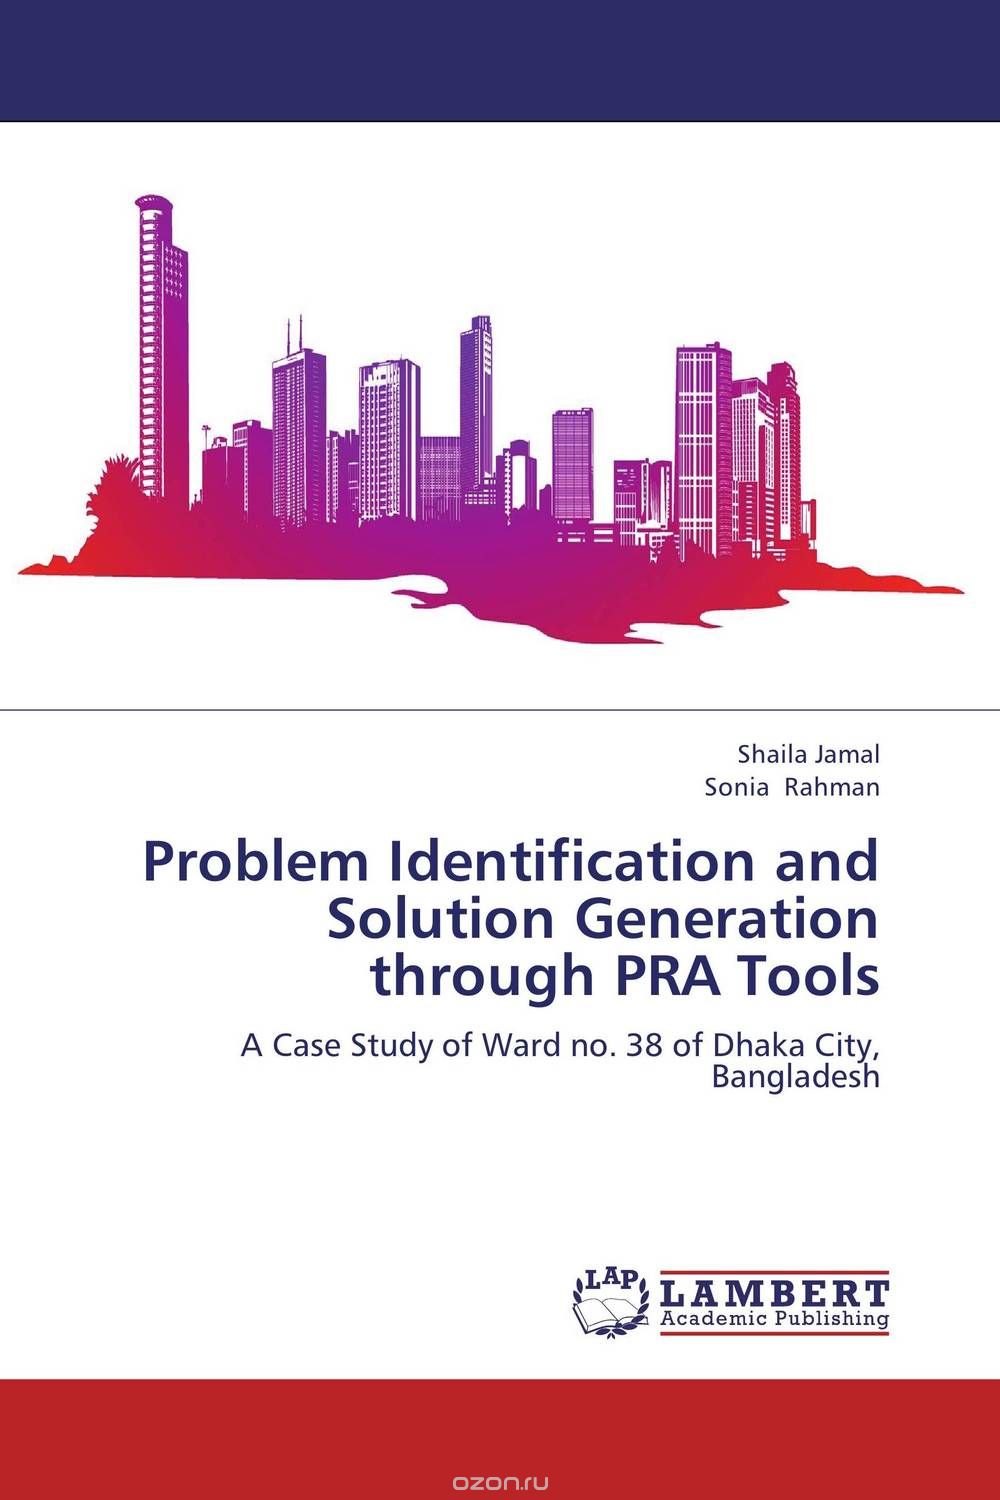 Скачать книгу "Problem Identification and Solution Generation through PRA Tools"